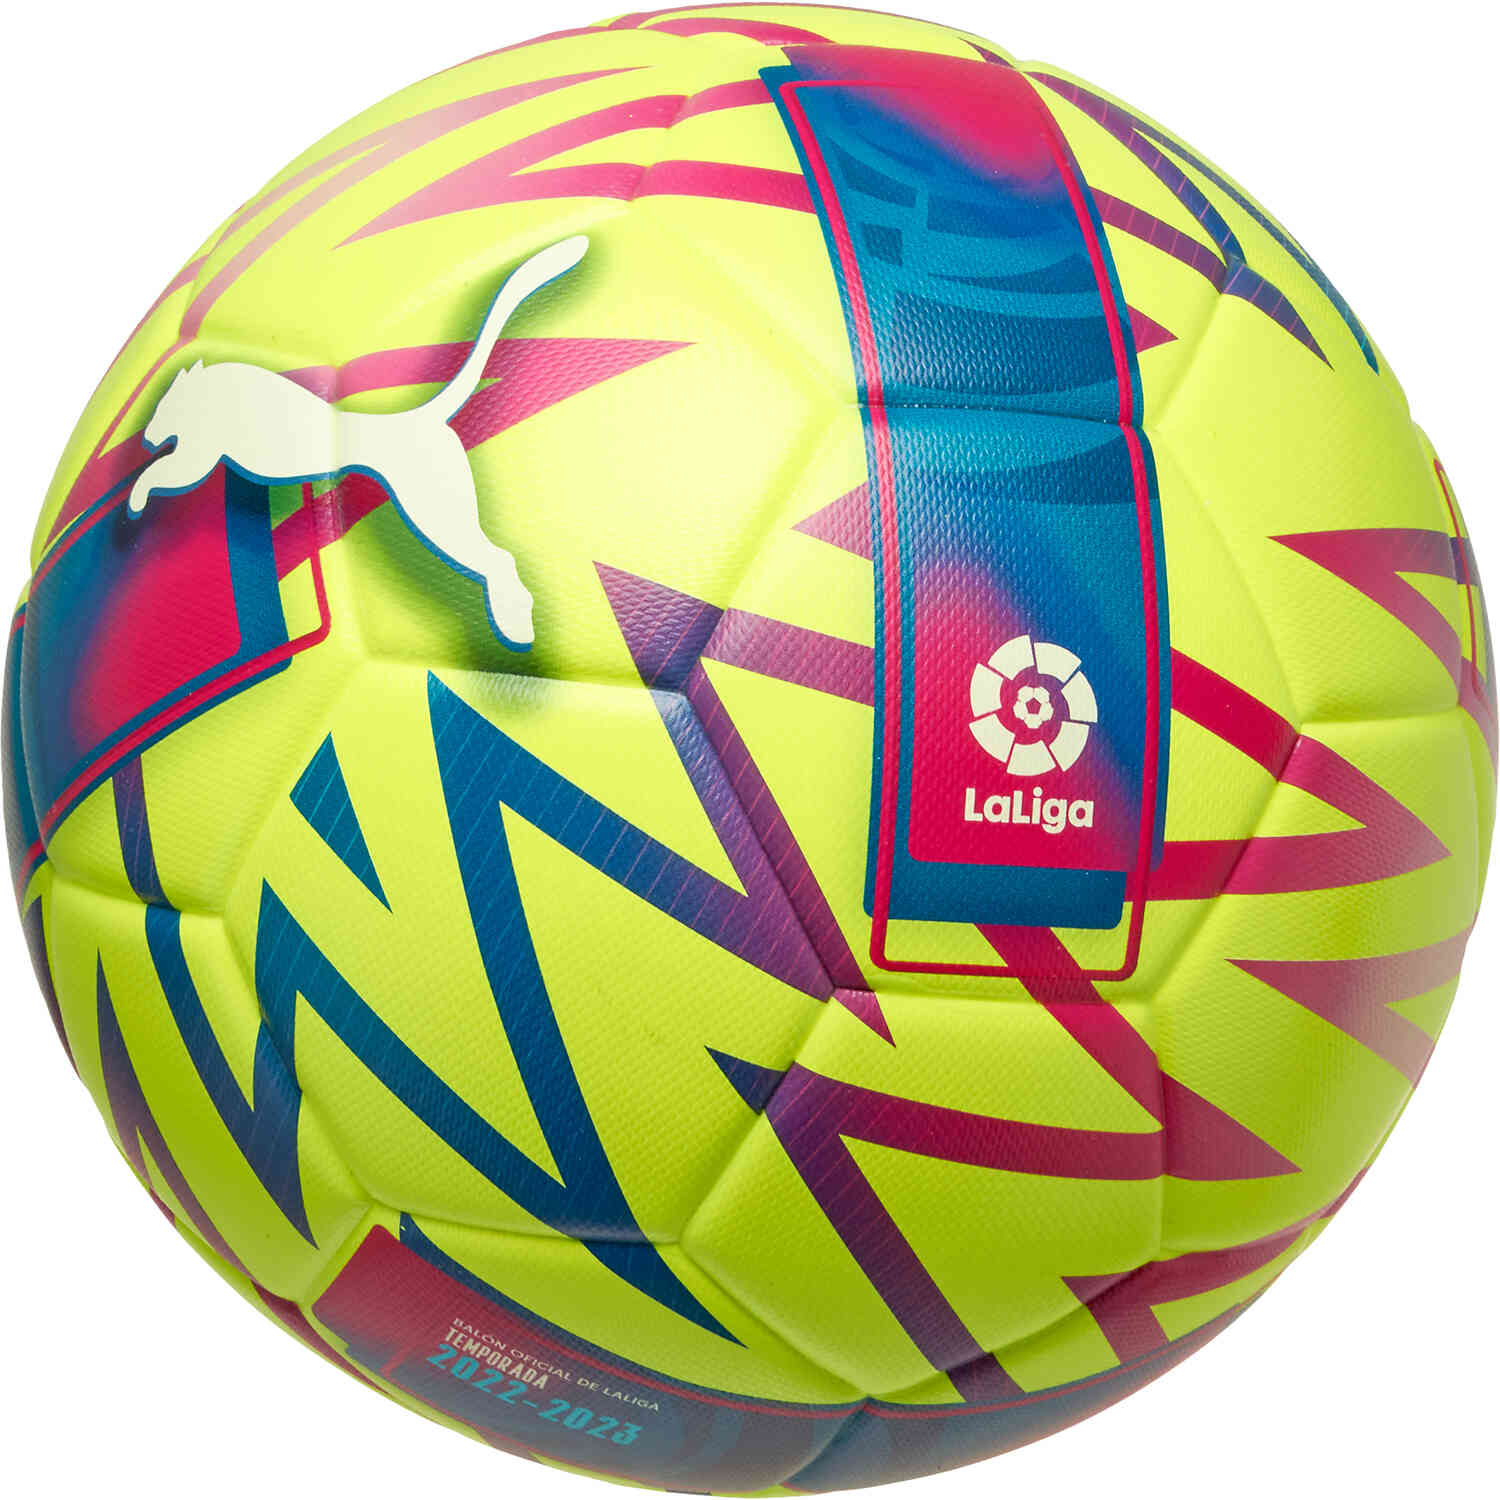 PUMA Liga Orbita Soccer Ball - 2022/23 SoccerPro